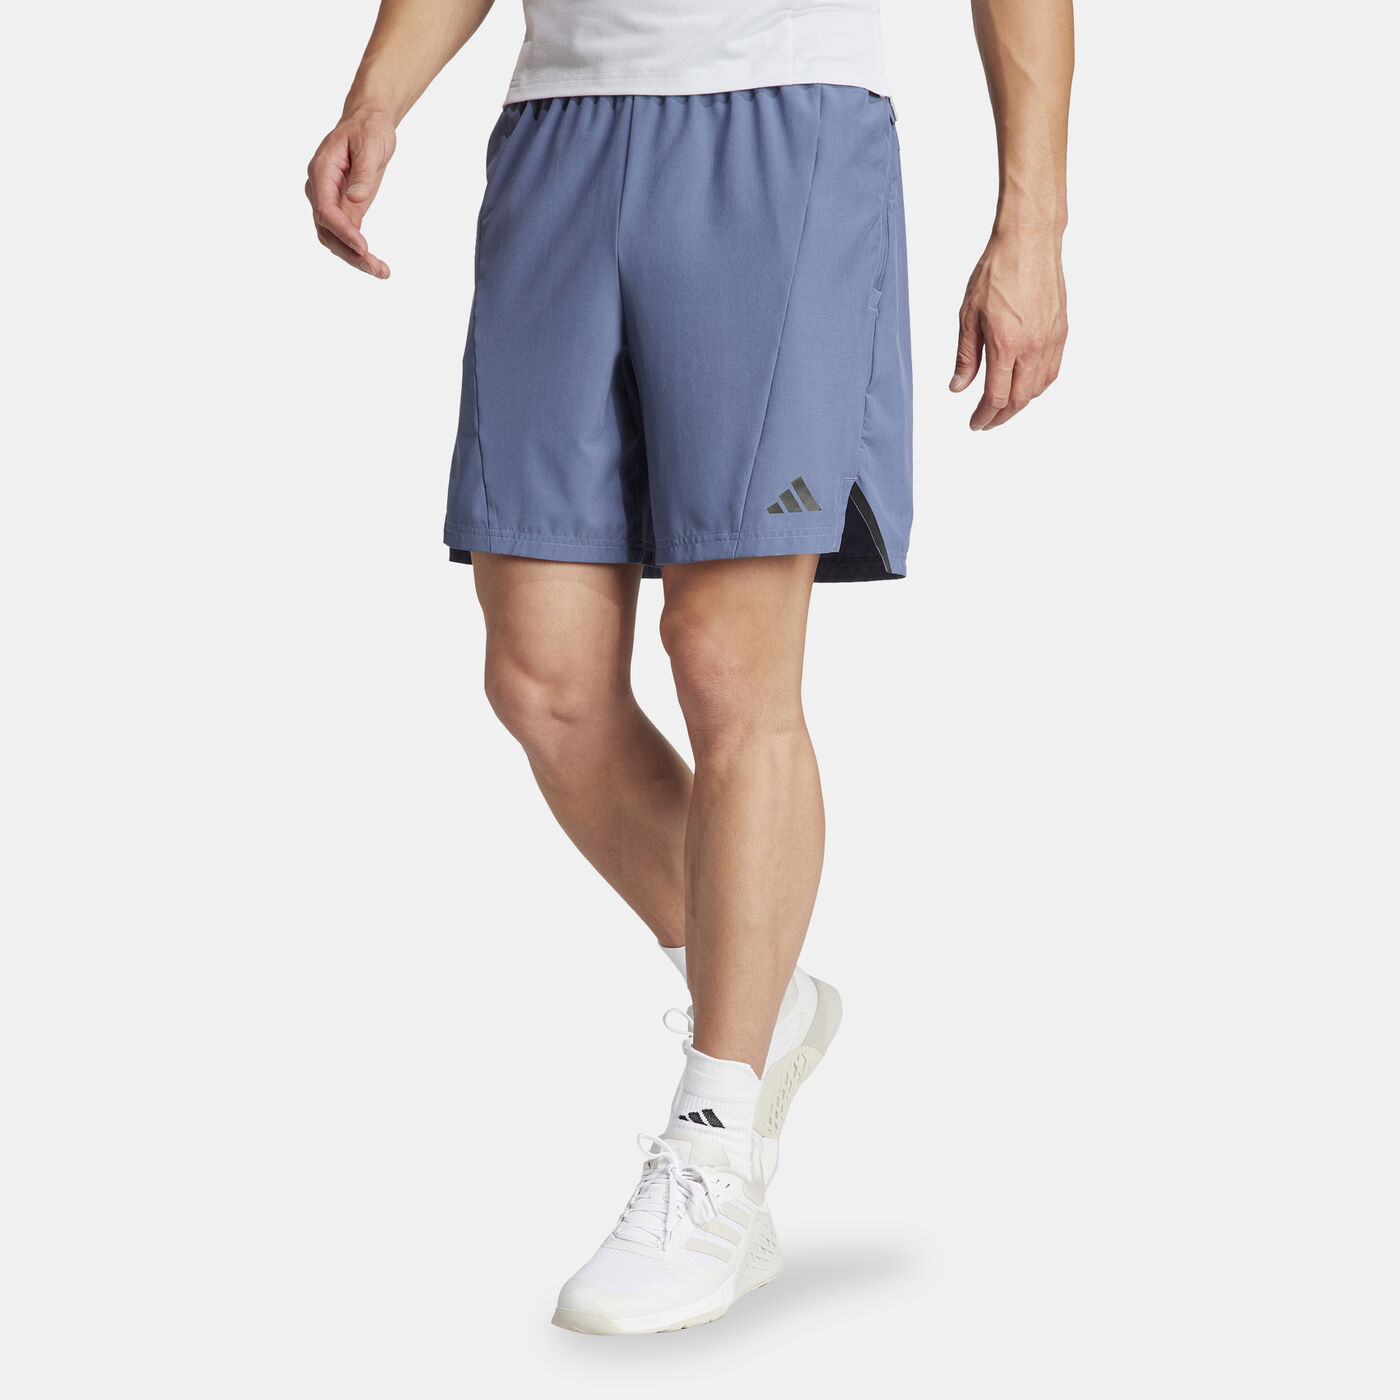 Men's Designed for Training Shorts